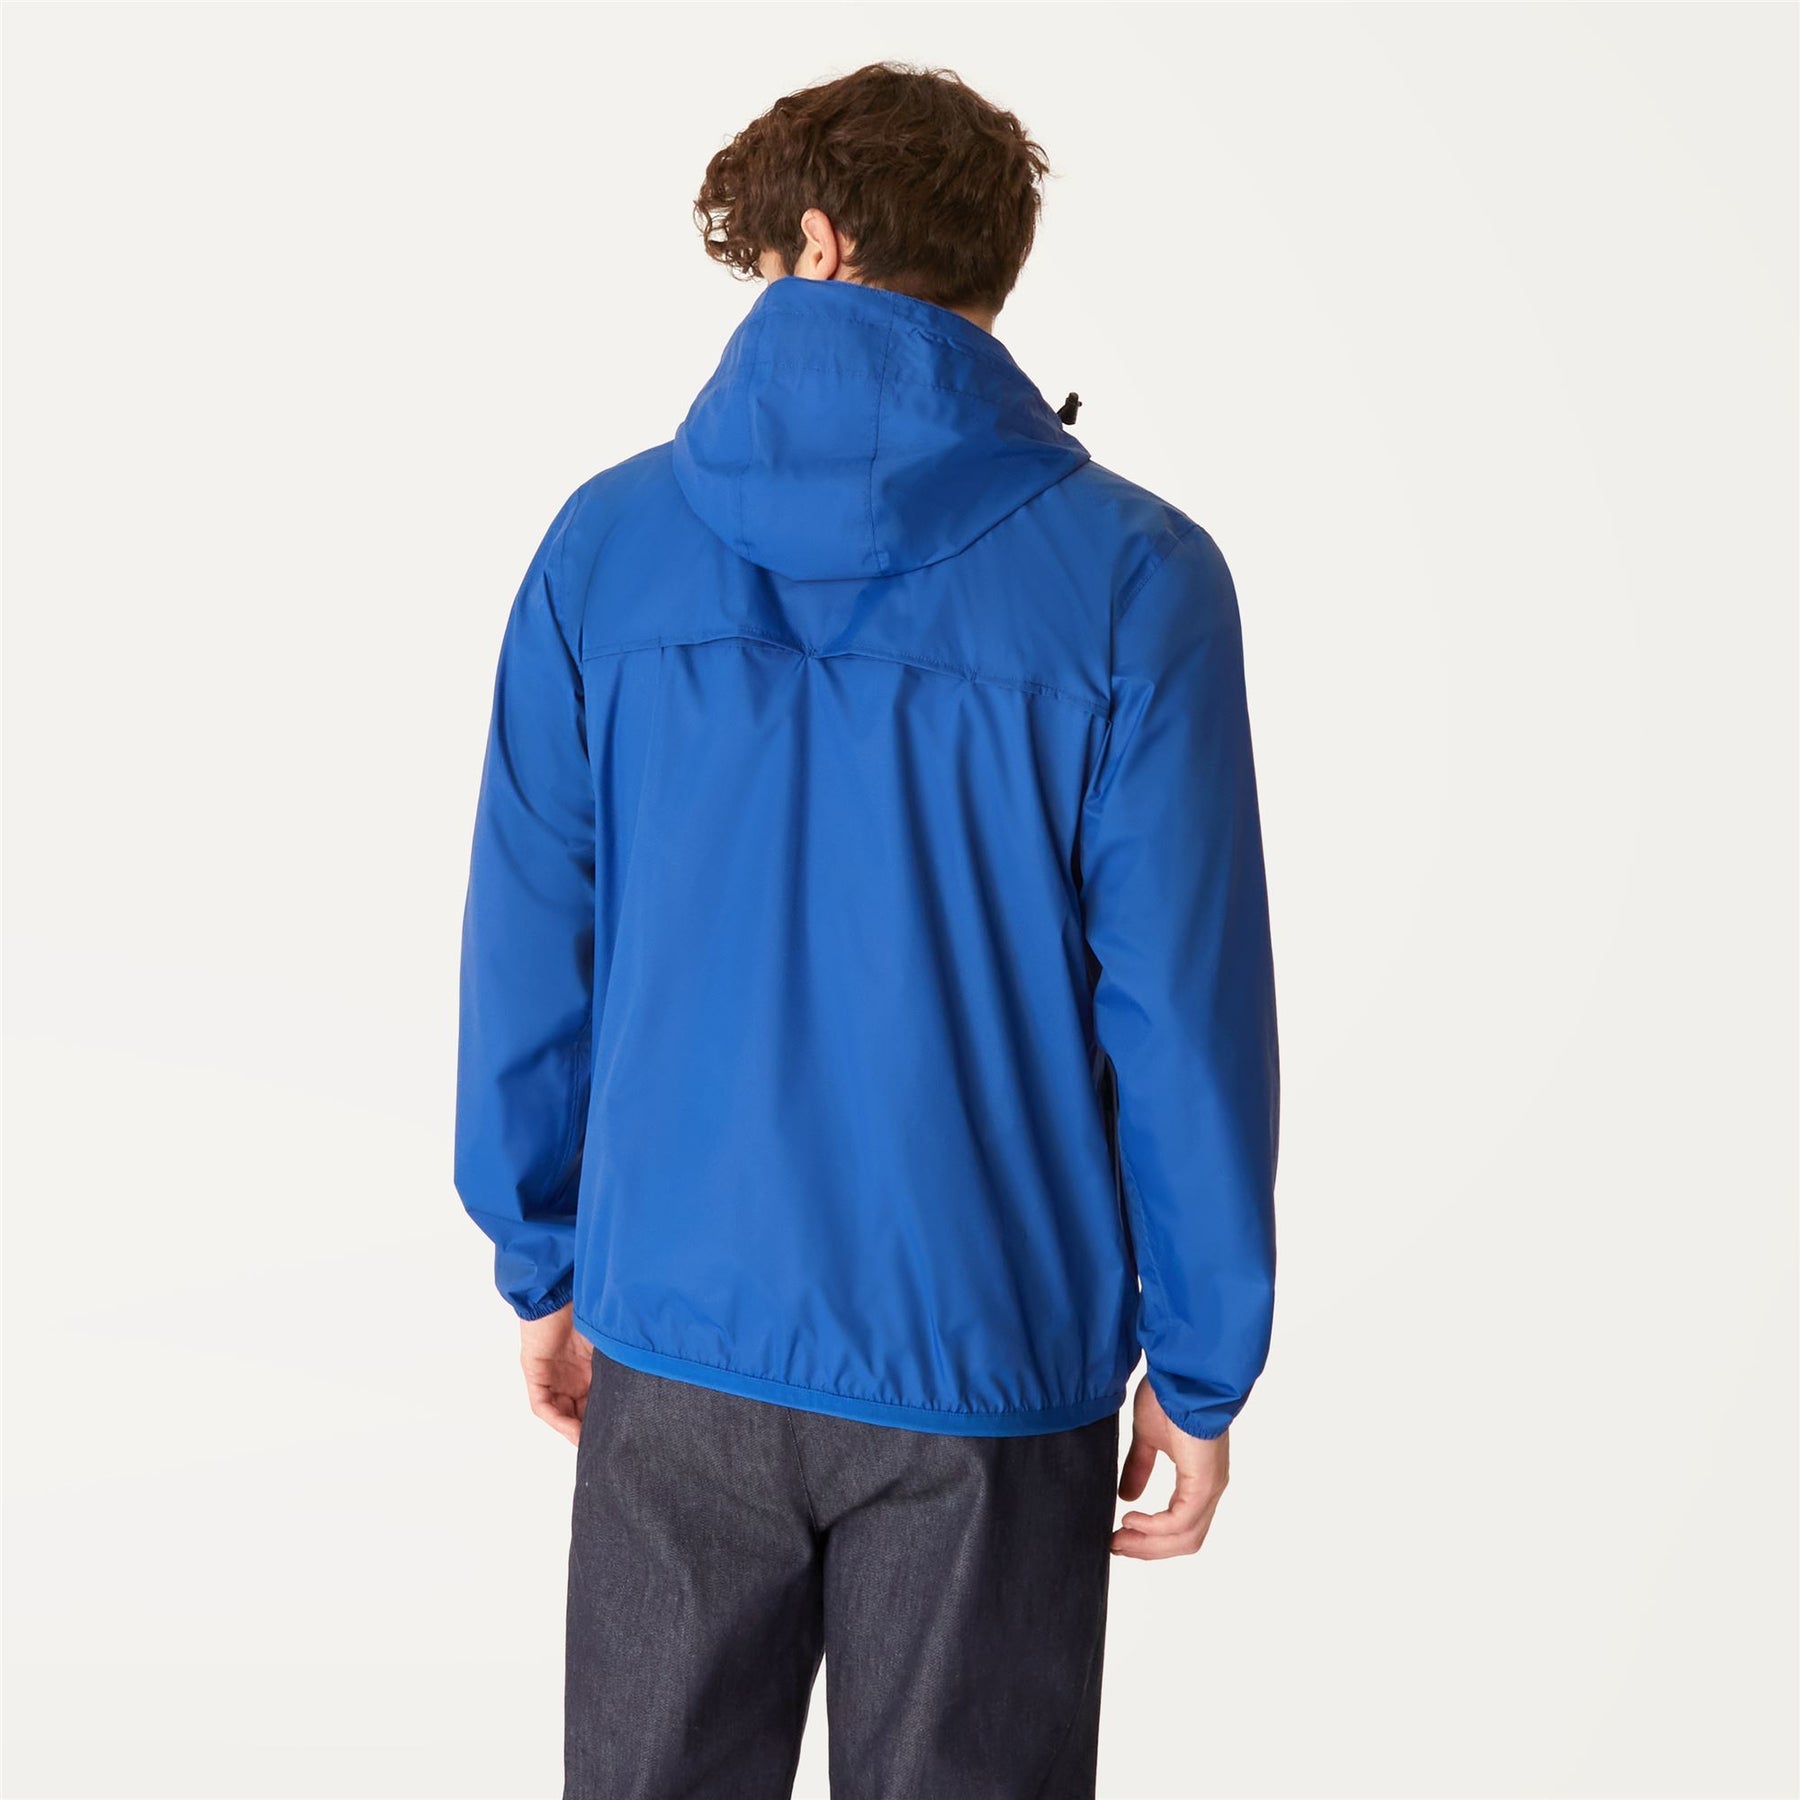 Claude - Unisex Packable Full Zip Waterproof  Rain Jacket in Blue Royal Marine